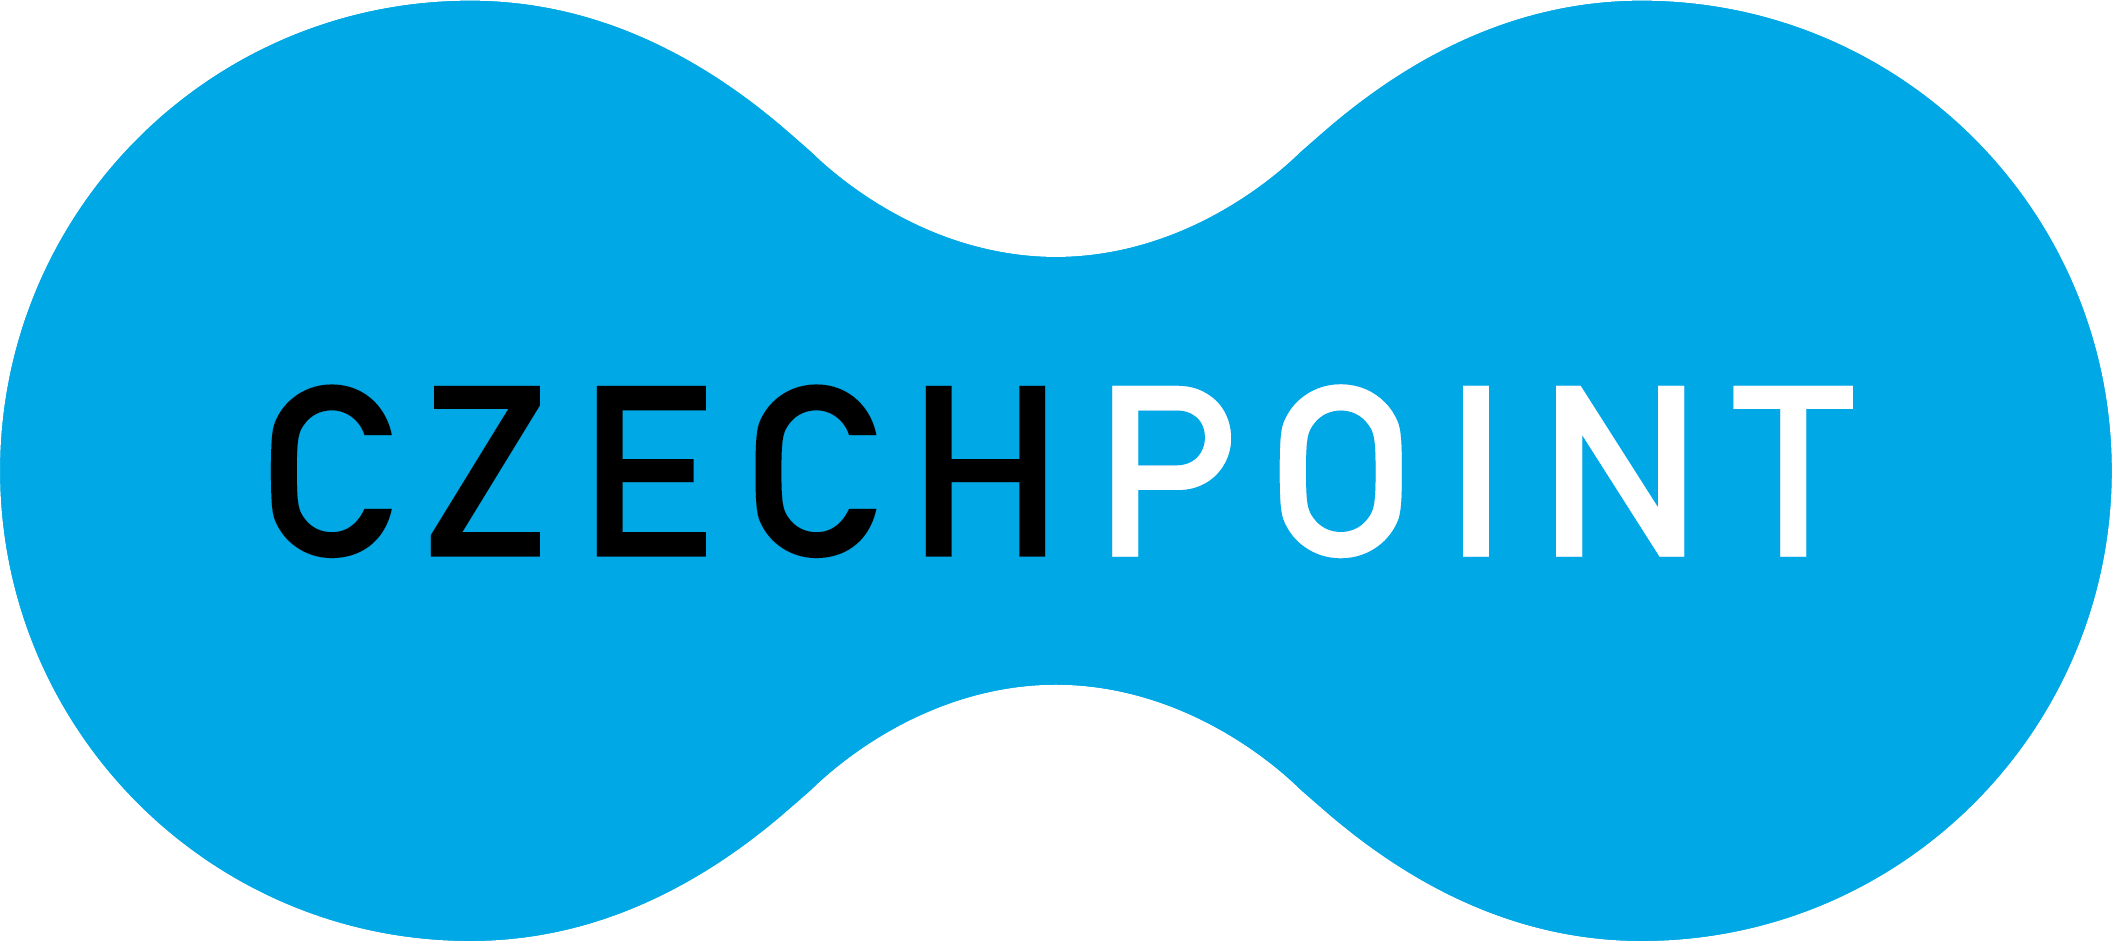 Czech POINT logo